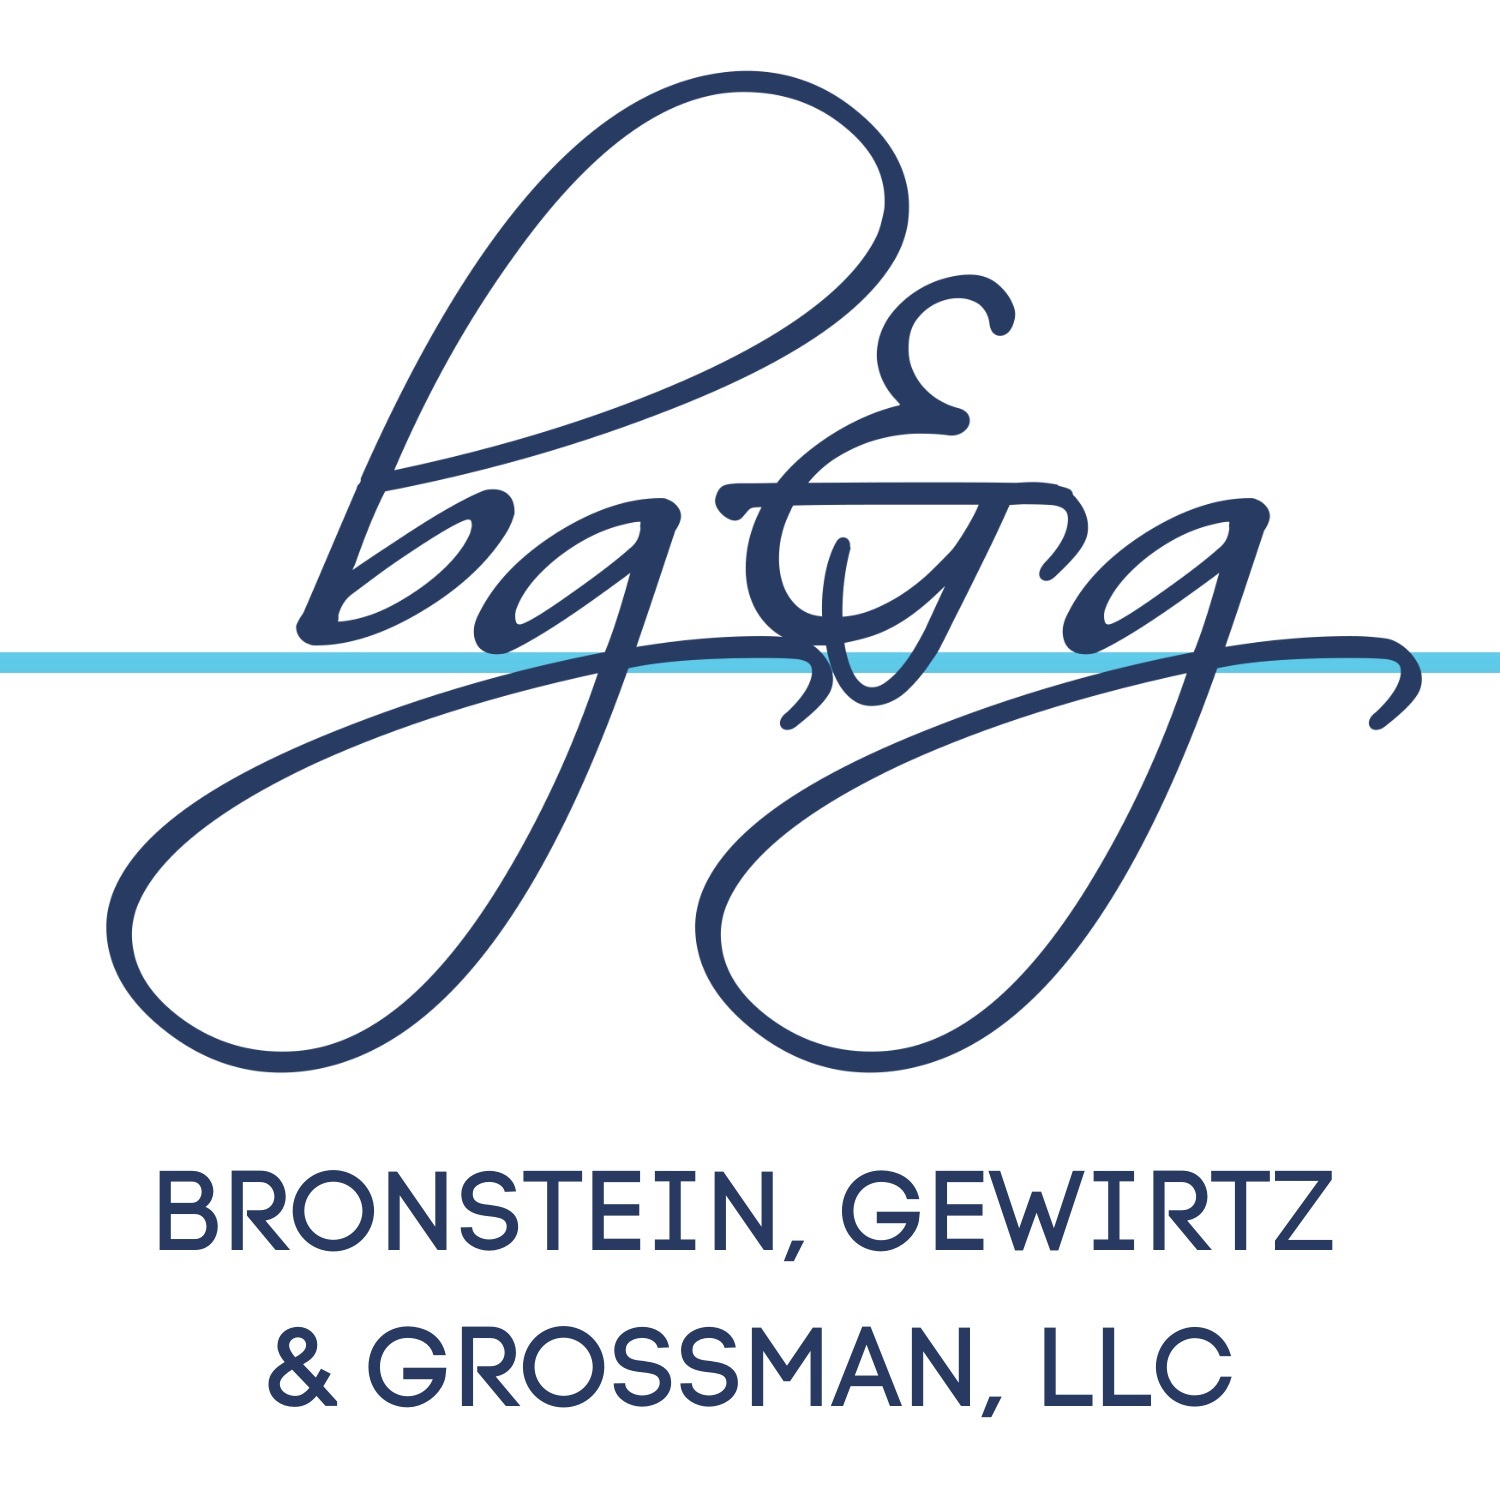 Bronstein, Gewirtz & Grossman, LLC